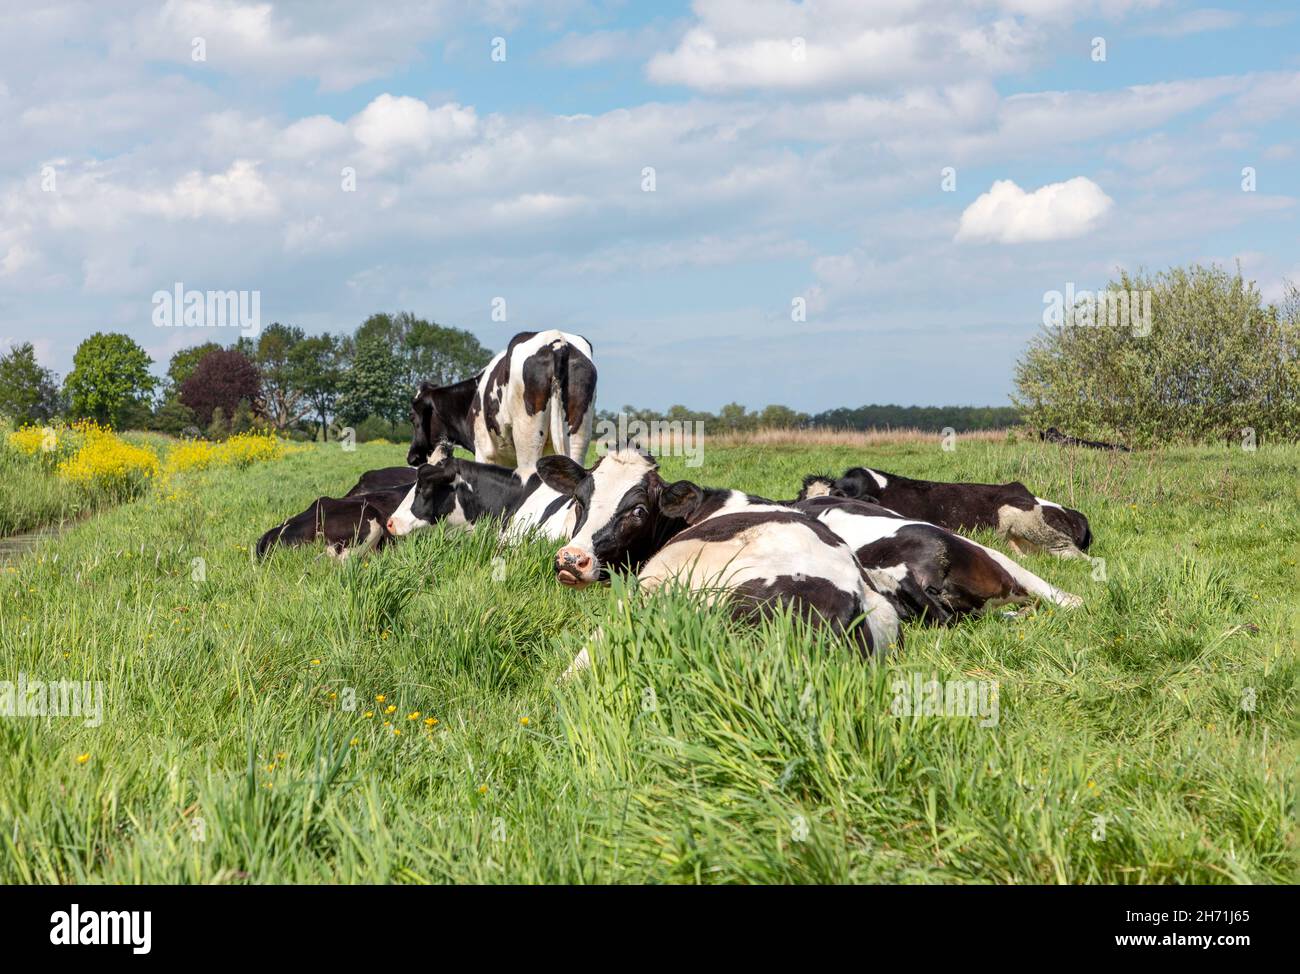 Gruppenkühe am Sommerabend gemütlich zusammen als Herde auf der Wiese liegend, friedlich und glücklich, eine Kuh schaut nach oben und dreht den Kopf rückwärts Stockfoto